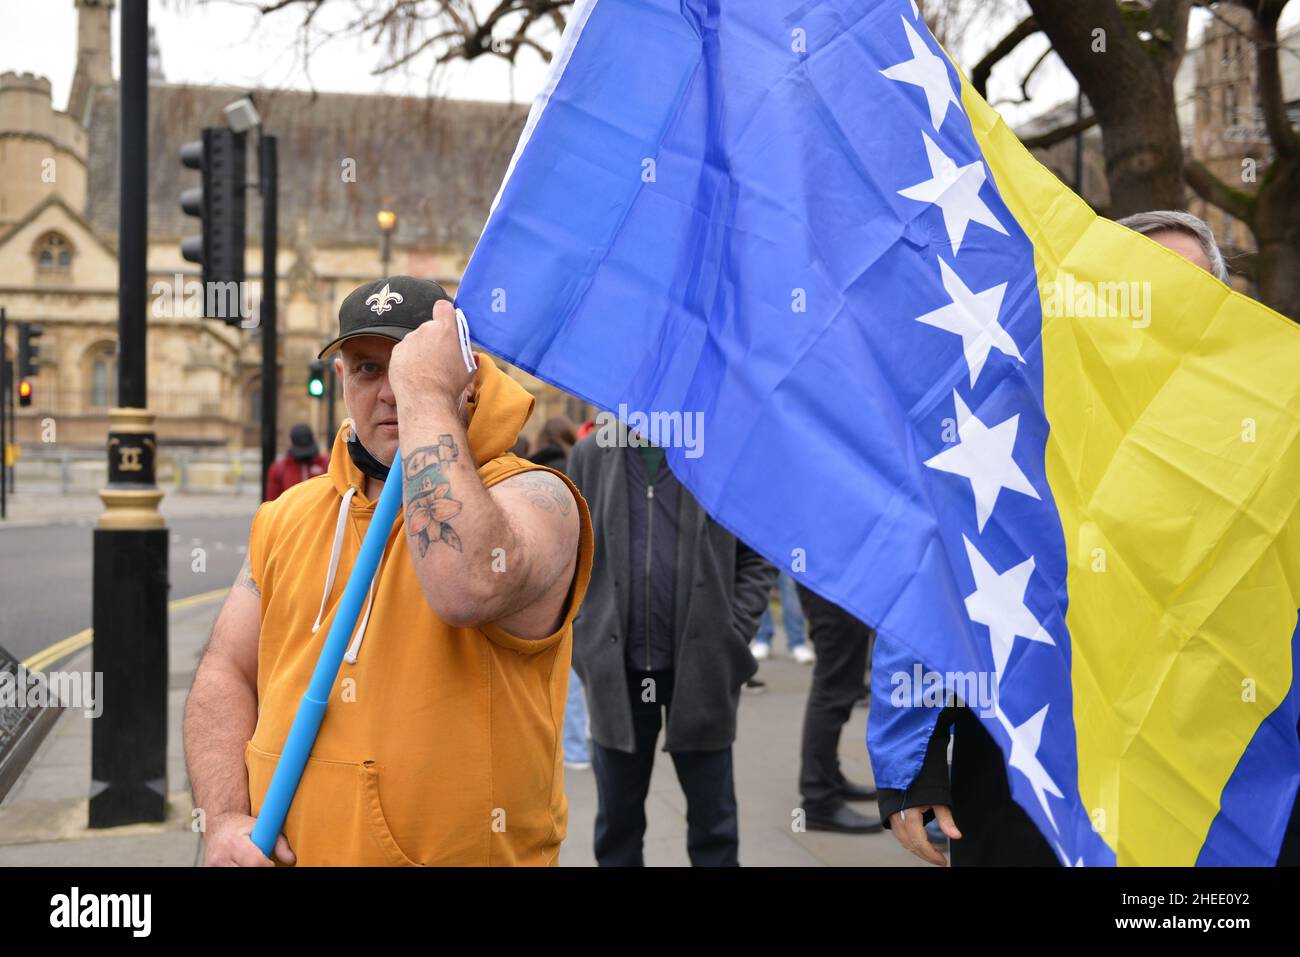 Die Demonstranten schwenken während der Demonstration eine Flagge. Die Diaspora von Bosnien und Herzegowina und Unterstützer der Einheit des Landes versammelten sich auf dem Parliament Square in London, um auf eine potenzielle neue bosnische Krise aufmerksam zu machen. Nachdem die bosnischen Serben die Arbeit der Zentralregierung blockiert hatten, wurden die Befürchtungen über einen landesweiten Zusammenbruch in ihrer größten Krise seit dem Krieg von 1990s neu geweckt. Stockfoto